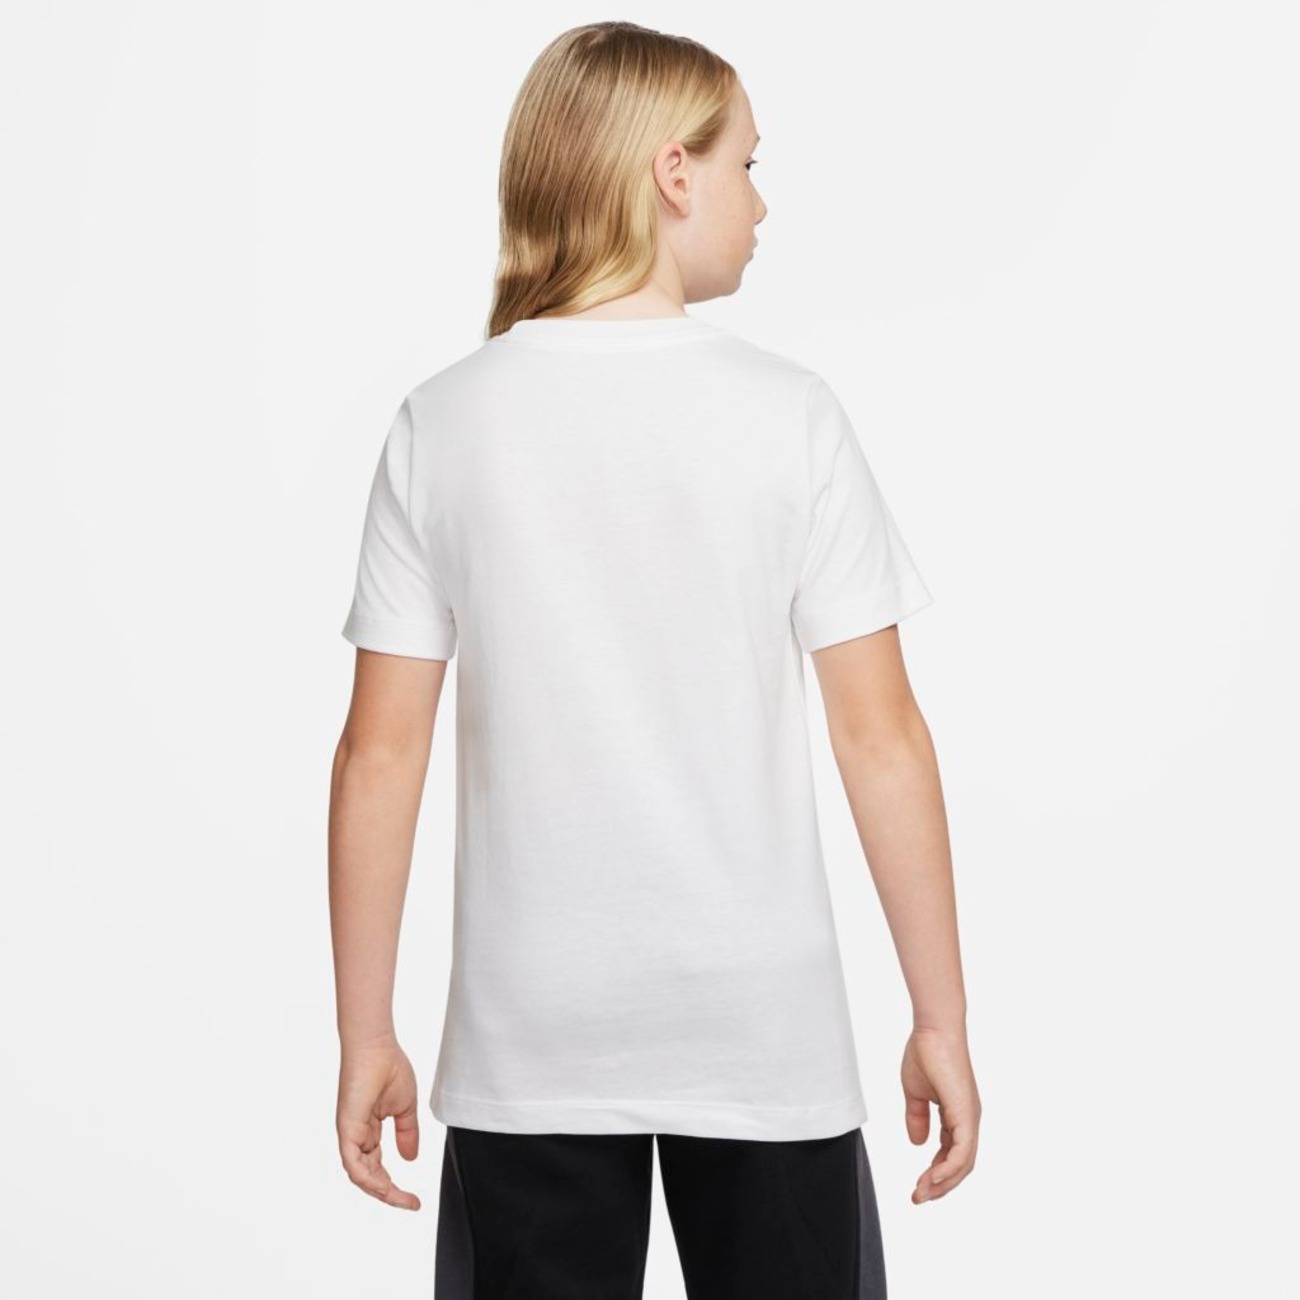 Camiseta Nike Air Infantil  - Foto 2